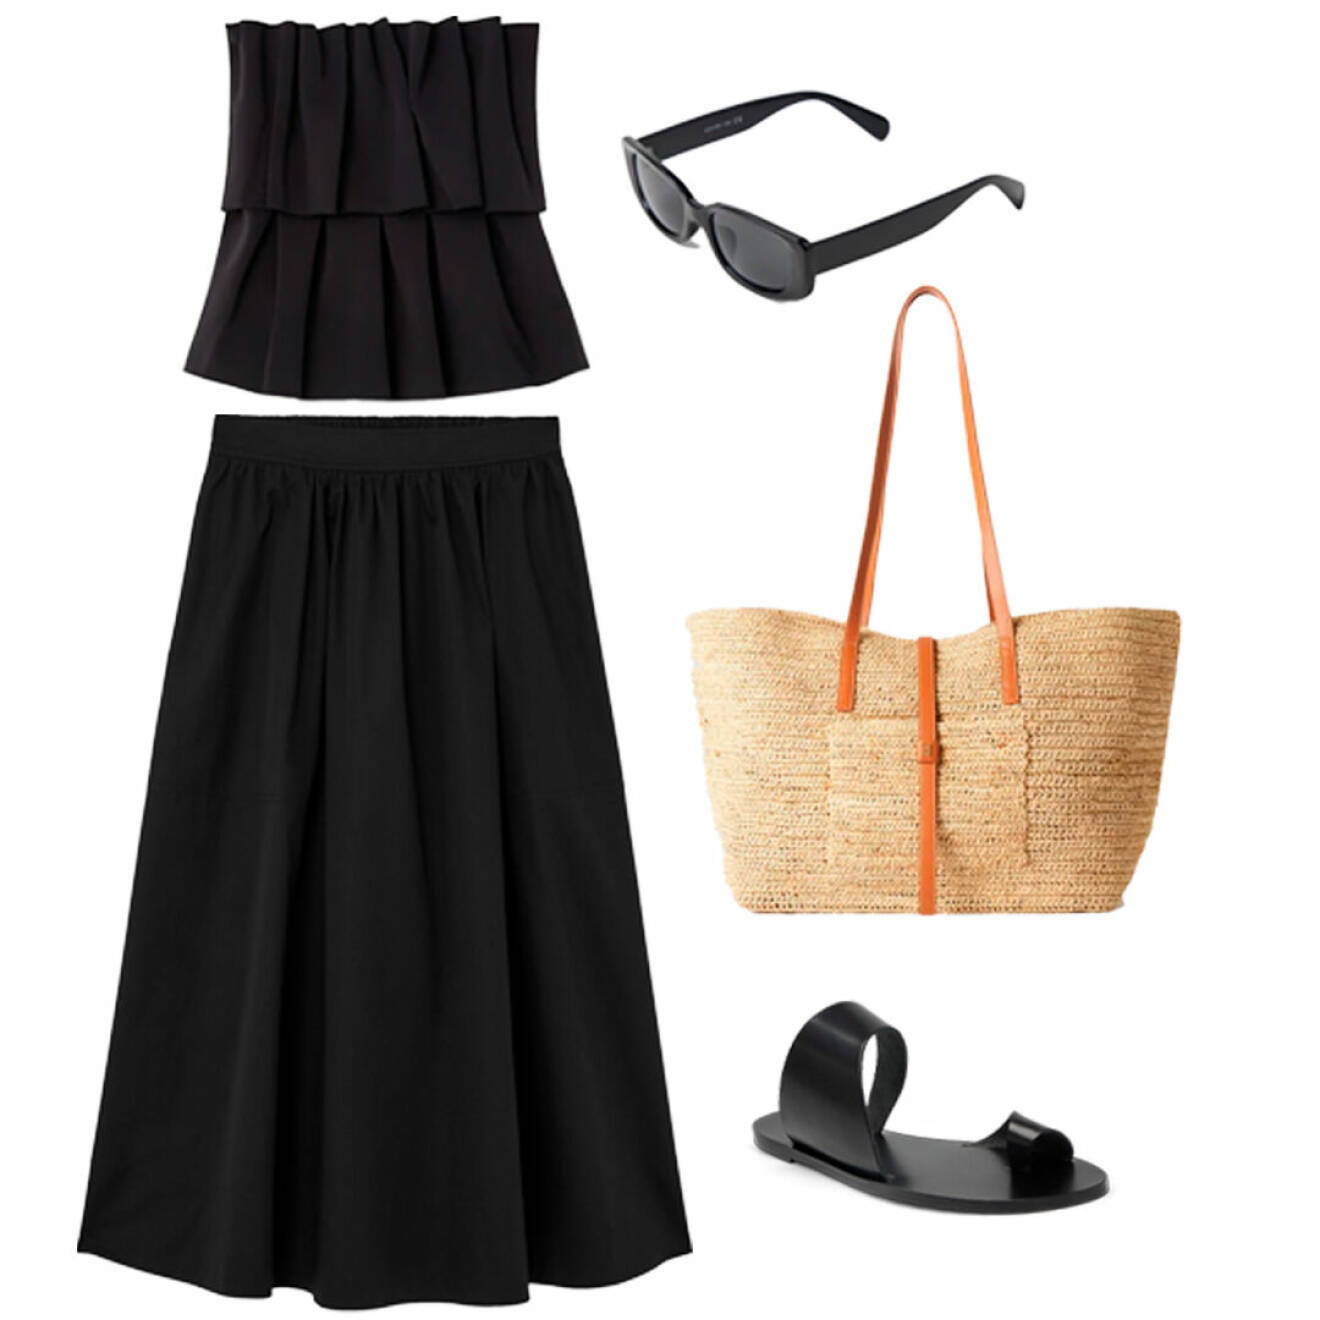 sommar outfit för dam med svart kjol